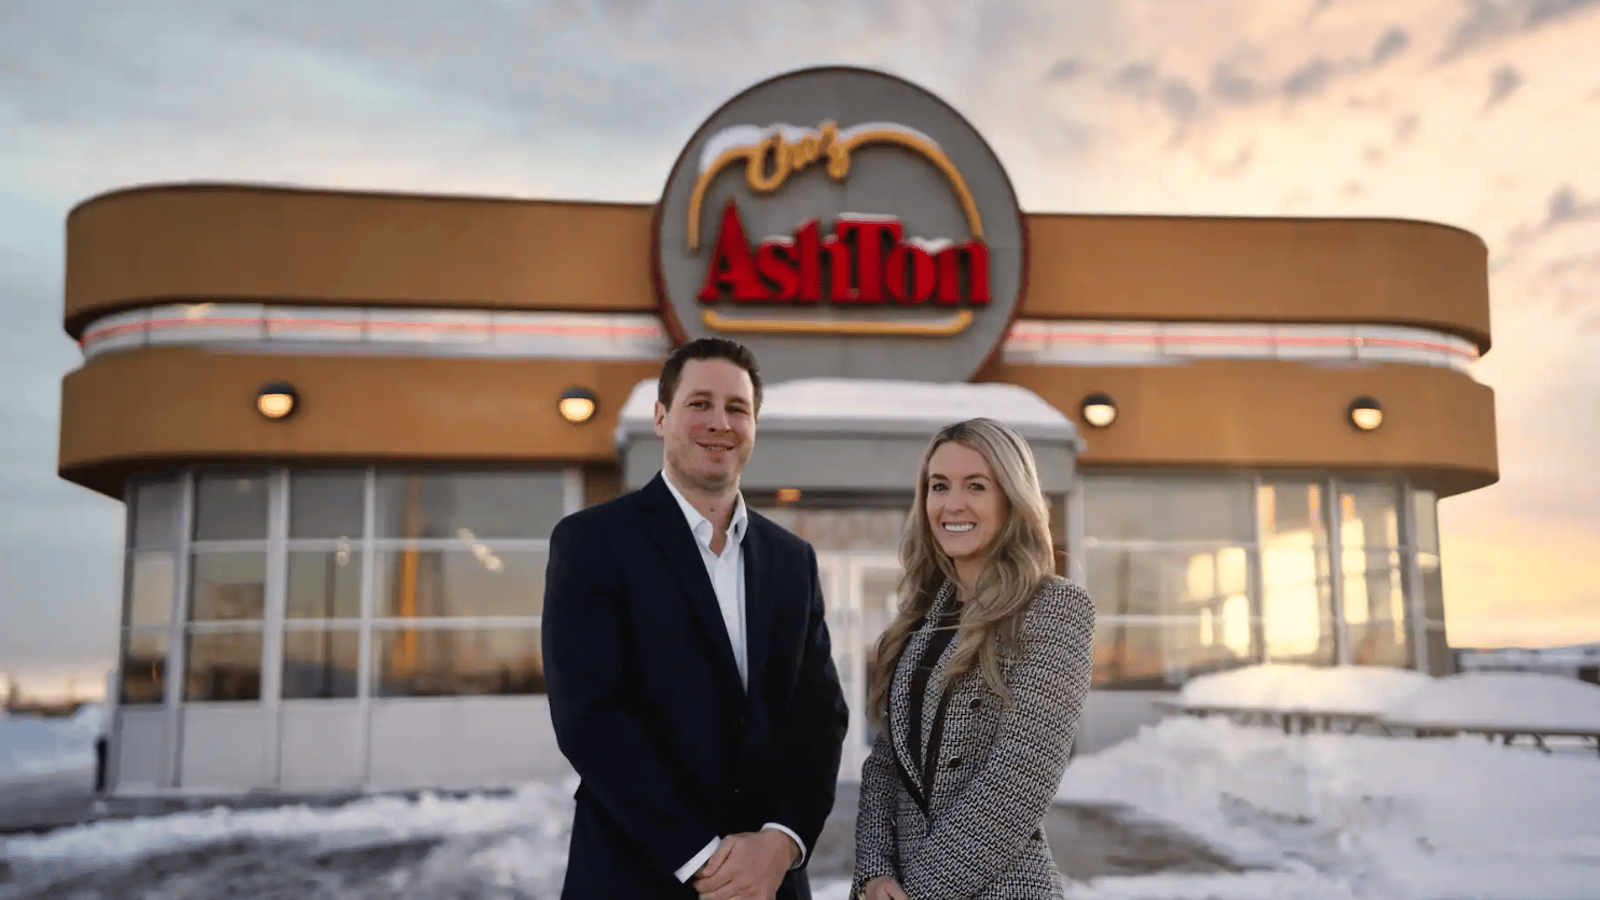 Les nouveaux proprios d'Ashton souhaitent ouvrir des succursales partout au Québec